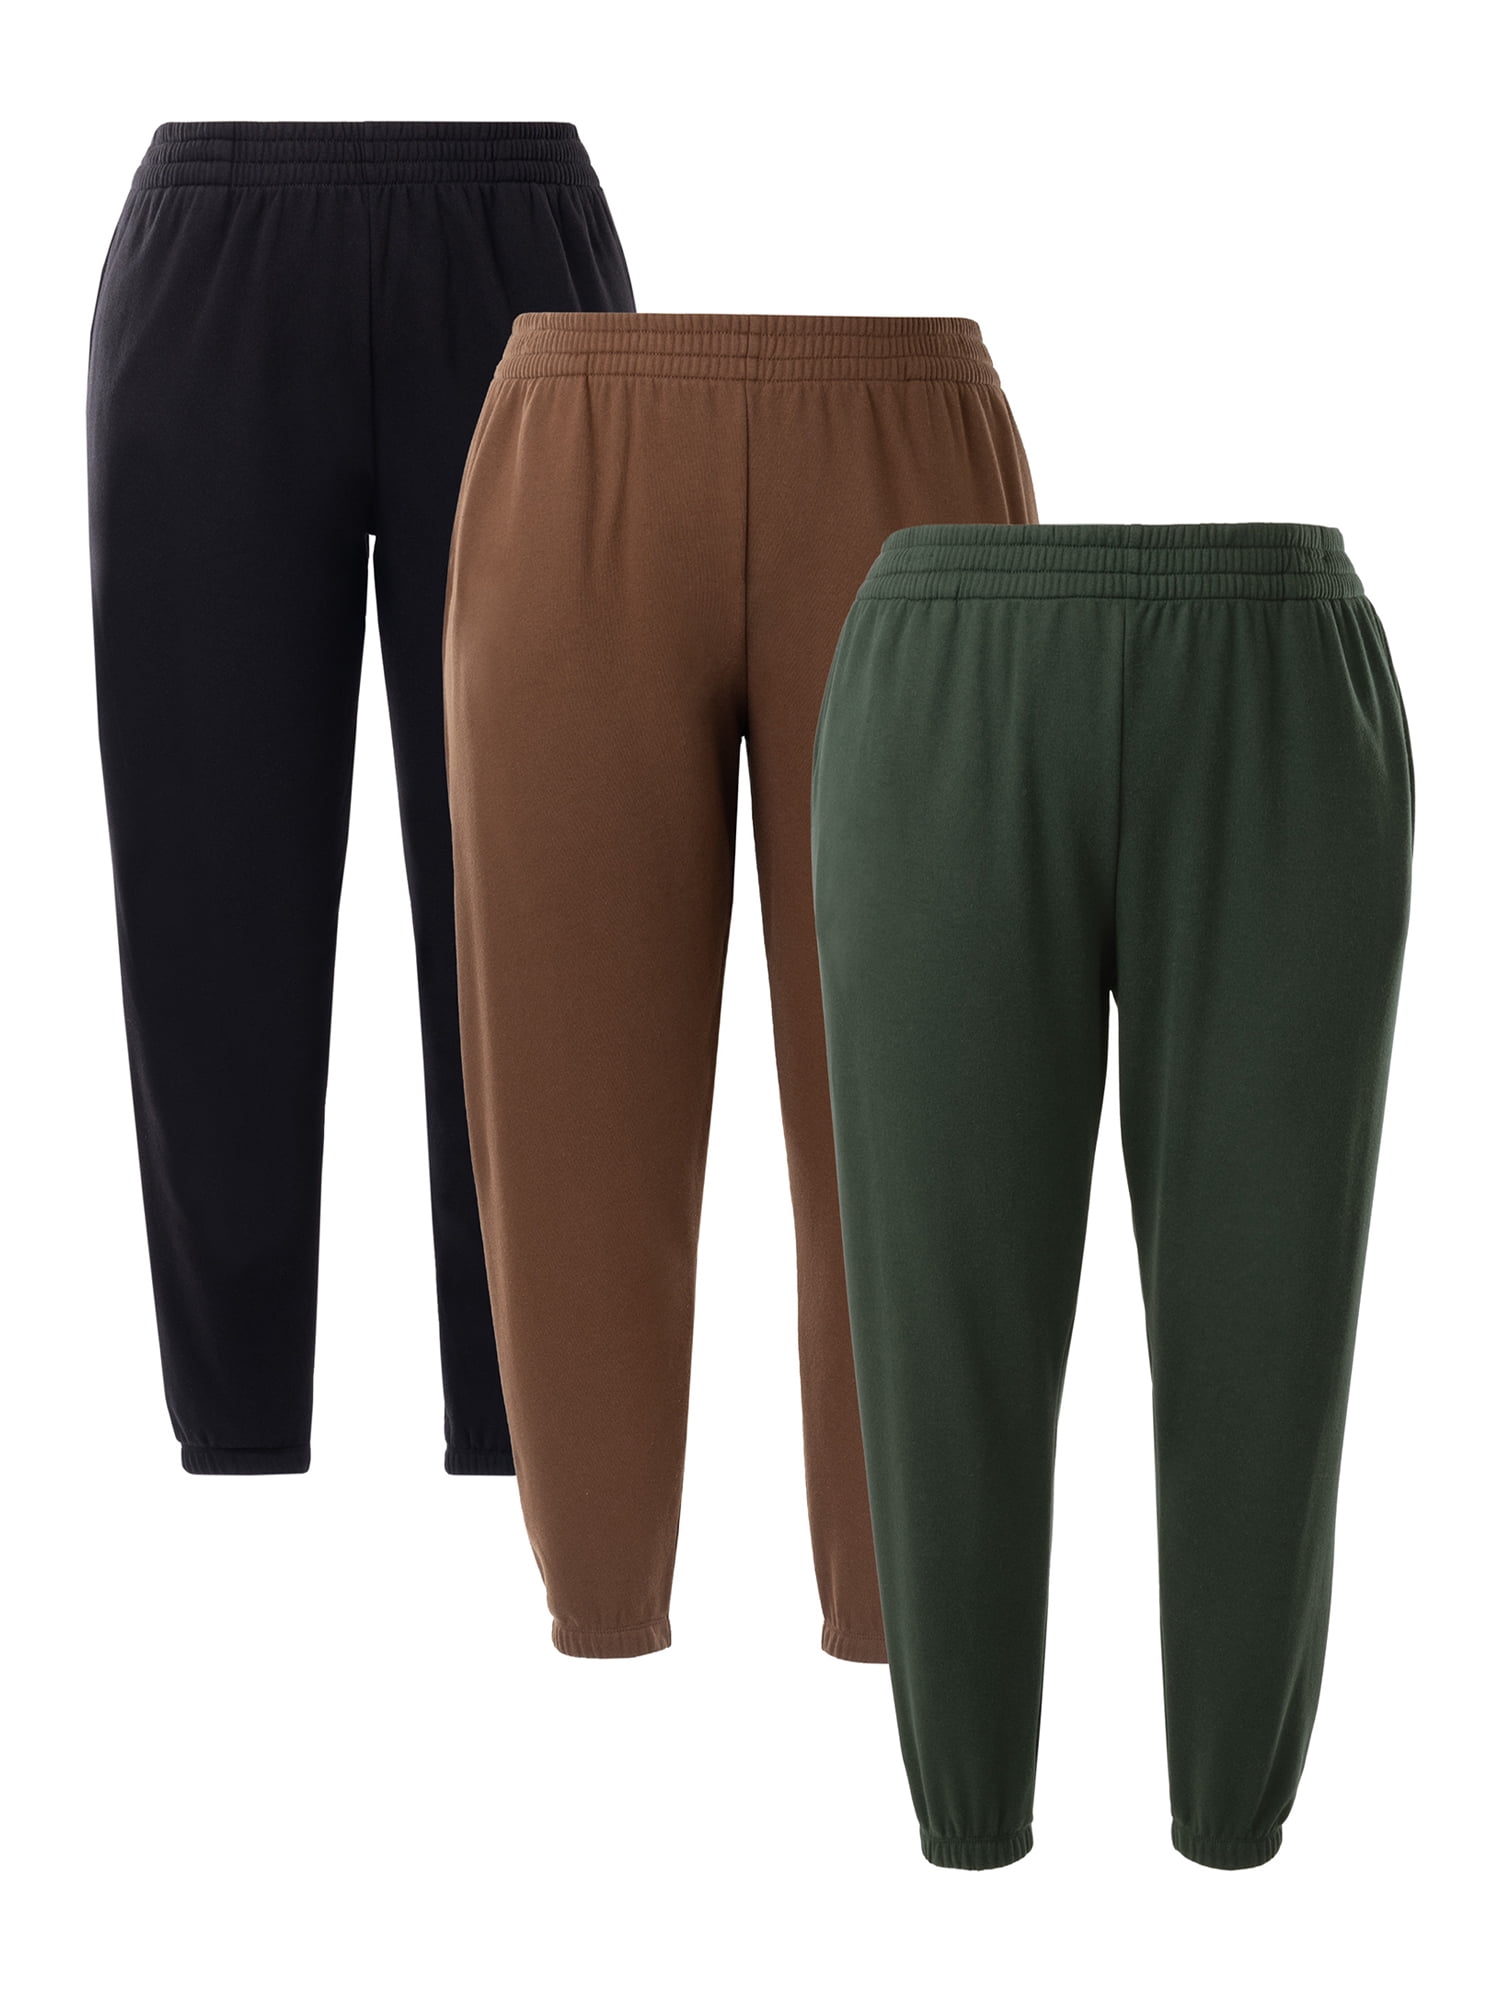 Terra & Sky Women's Plus Size Fleece Sweatpants, 2-Pack